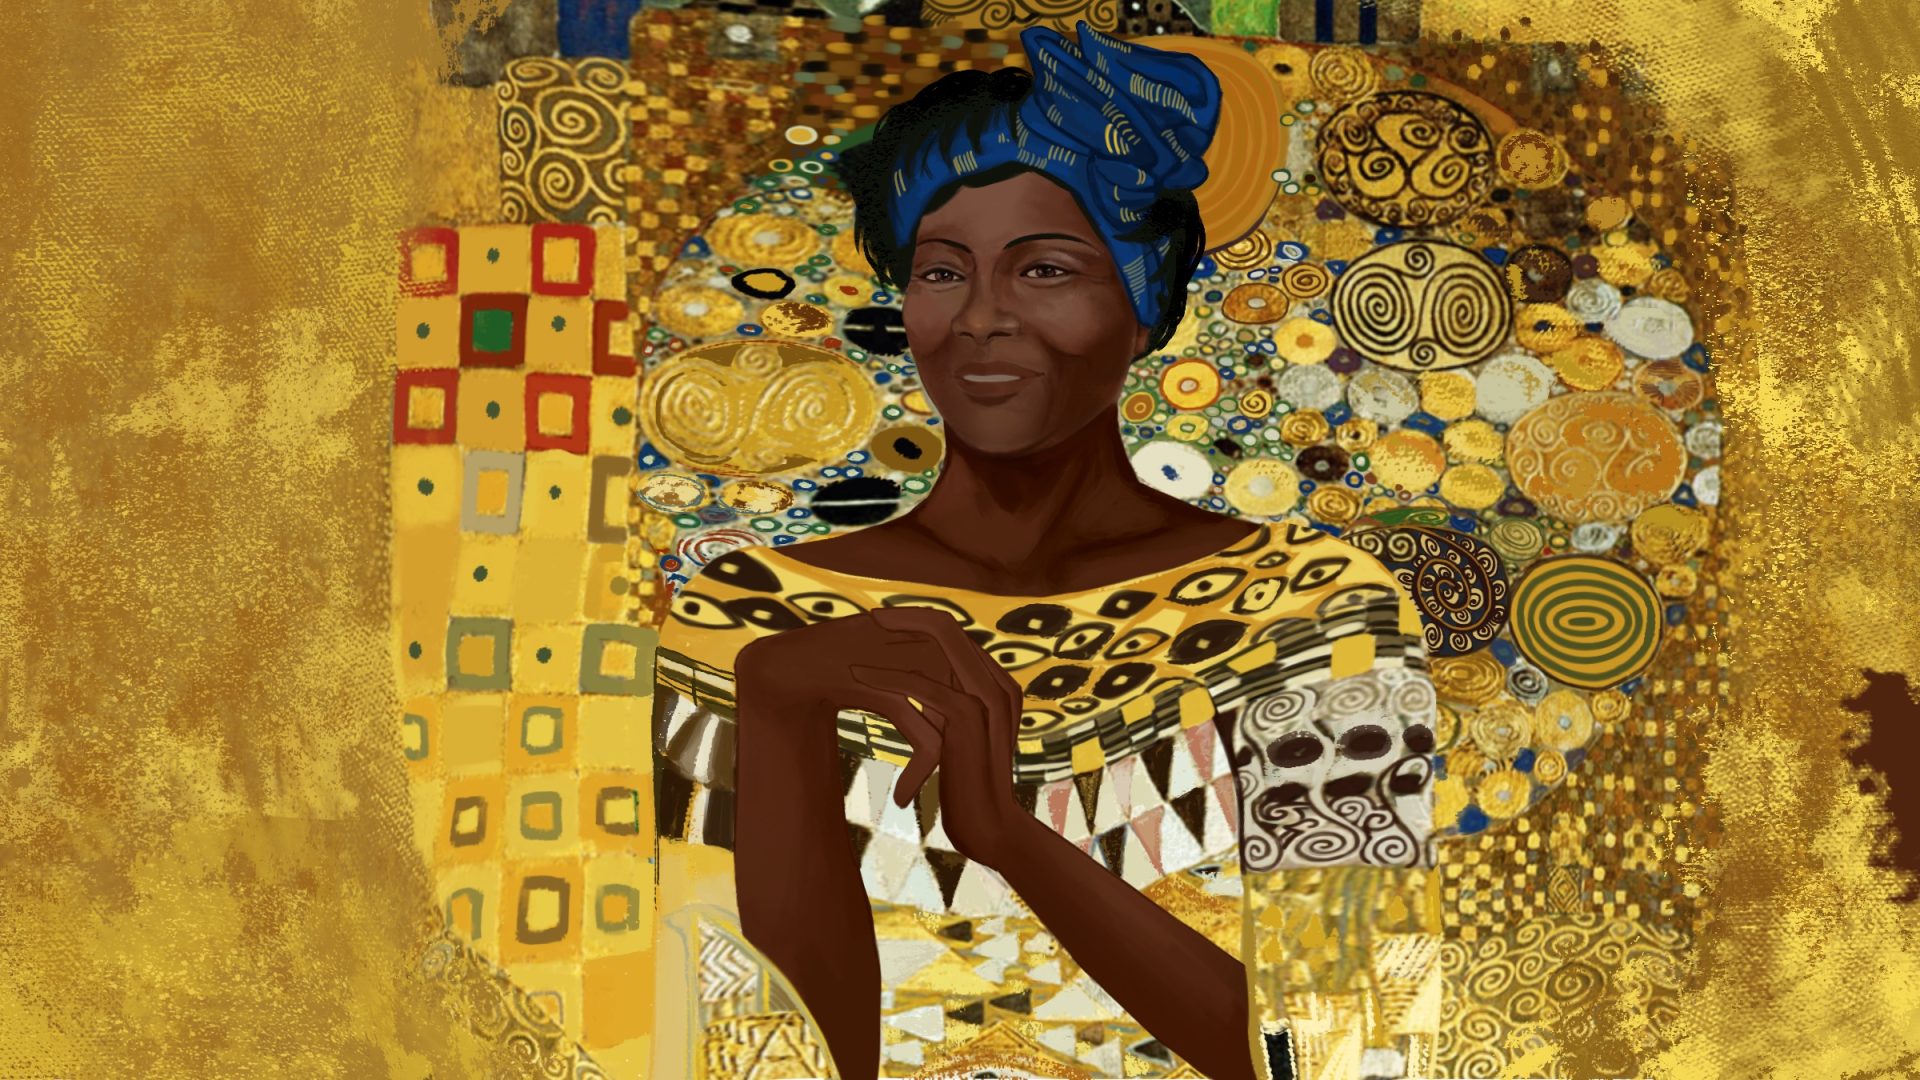 旺加里·马蒂亚 (Wangari Maathia) 的肖像，采用奥地利画家古斯塔夫·克里姆特 (Gustav Klimt) 的《阿黛尔·布洛赫-鲍尔 I》(Adele Bloch-Bauer I) 风格。